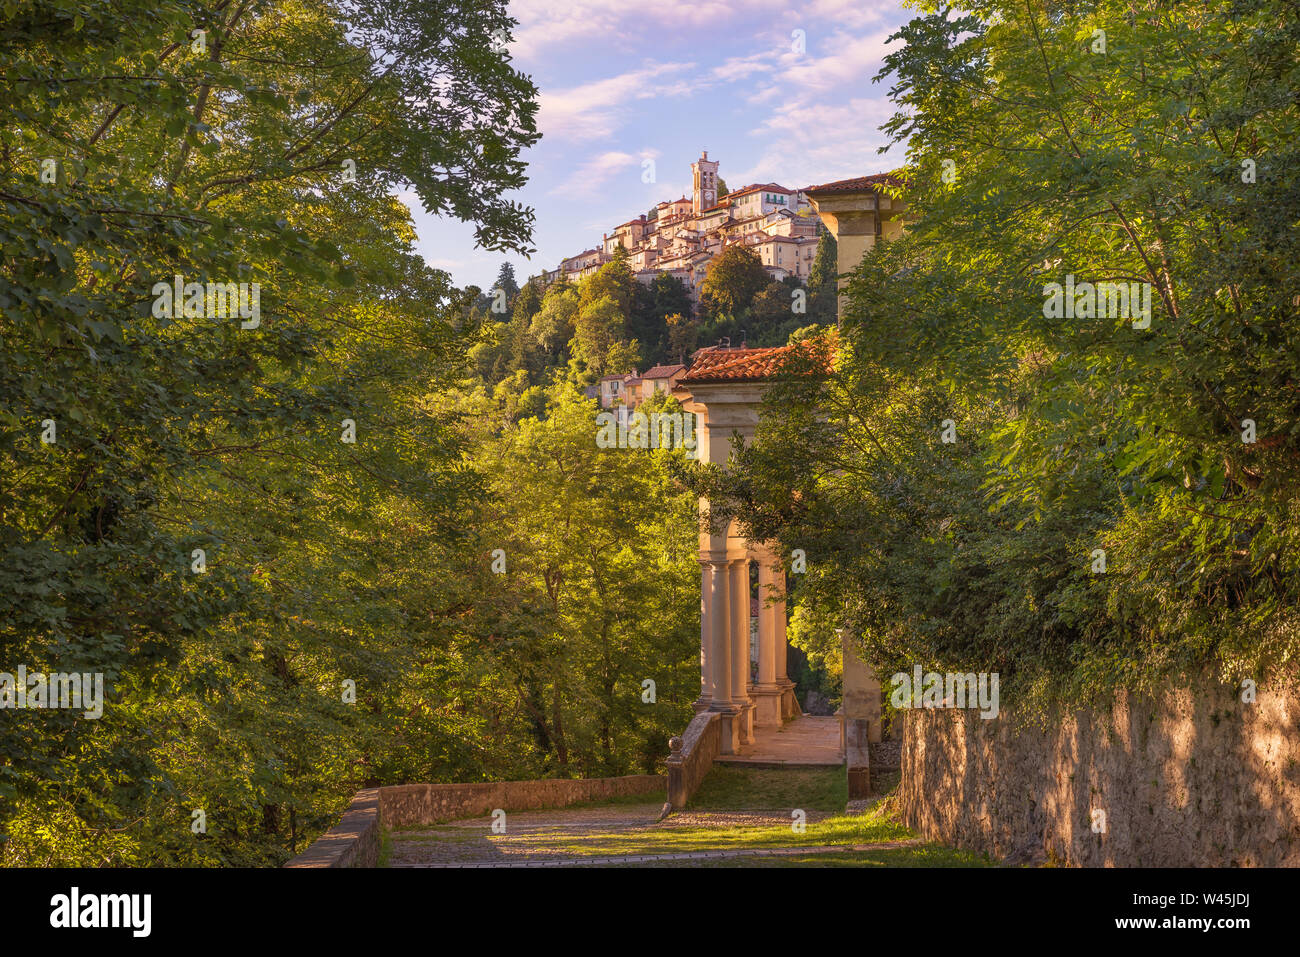 Alten und berühmten Italienischen mittelalterlichen Dorf. Sacro Monte di Varese mit dem heiligen Weg zum mittelalterlichen Dorf (im Hintergrund) Stockfoto